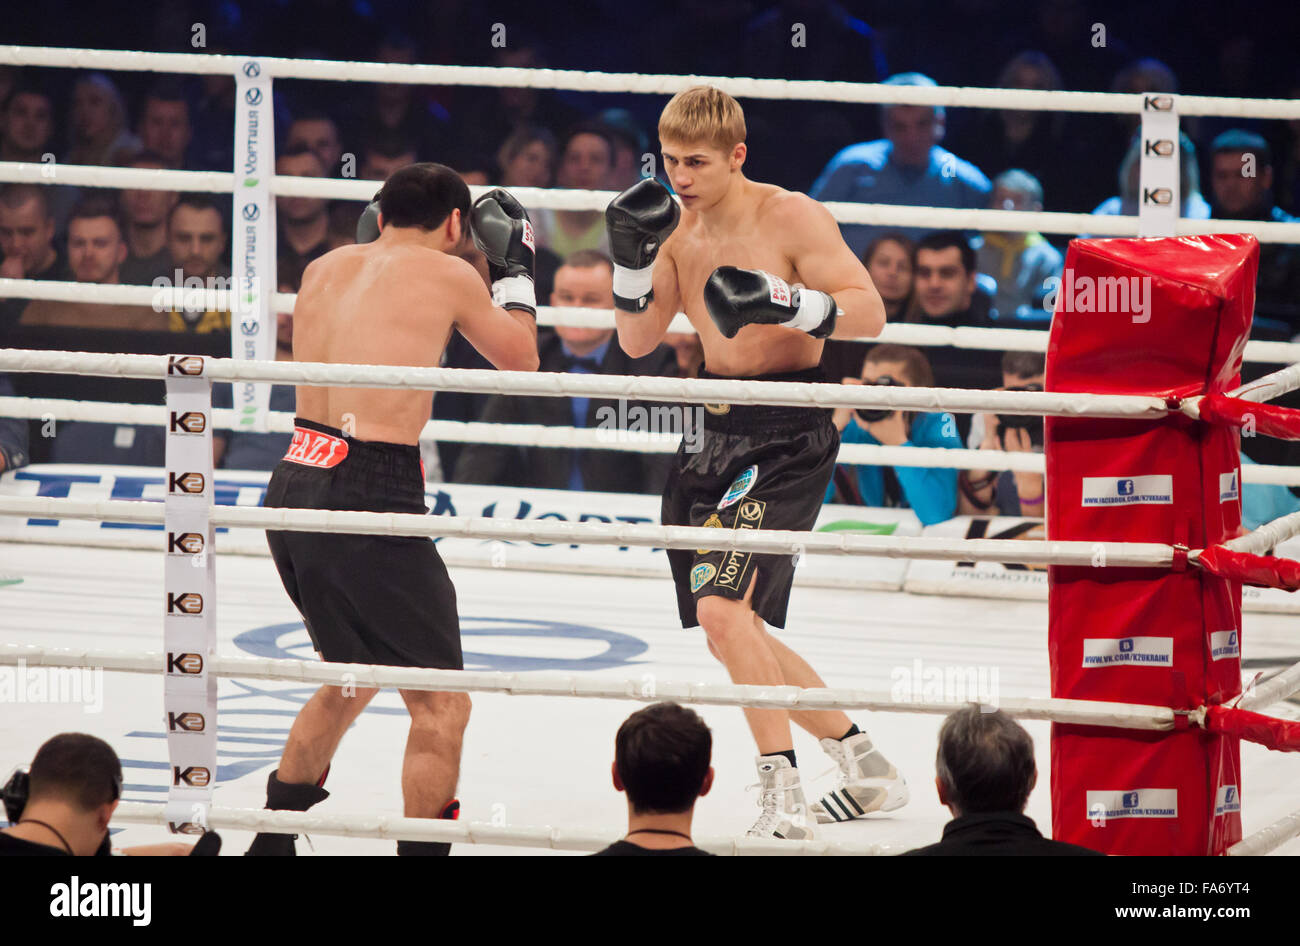 Kiev, UKRAINE - le 13 décembre 2014 : Oleksandr Spyrko d'Ukraine (R) se bat avec Jonny Ibramov d'Ouzbékistan/Autriche lors de Soirée 'Boxing' dans le Palais des Sports de Kiev Banque D'Images